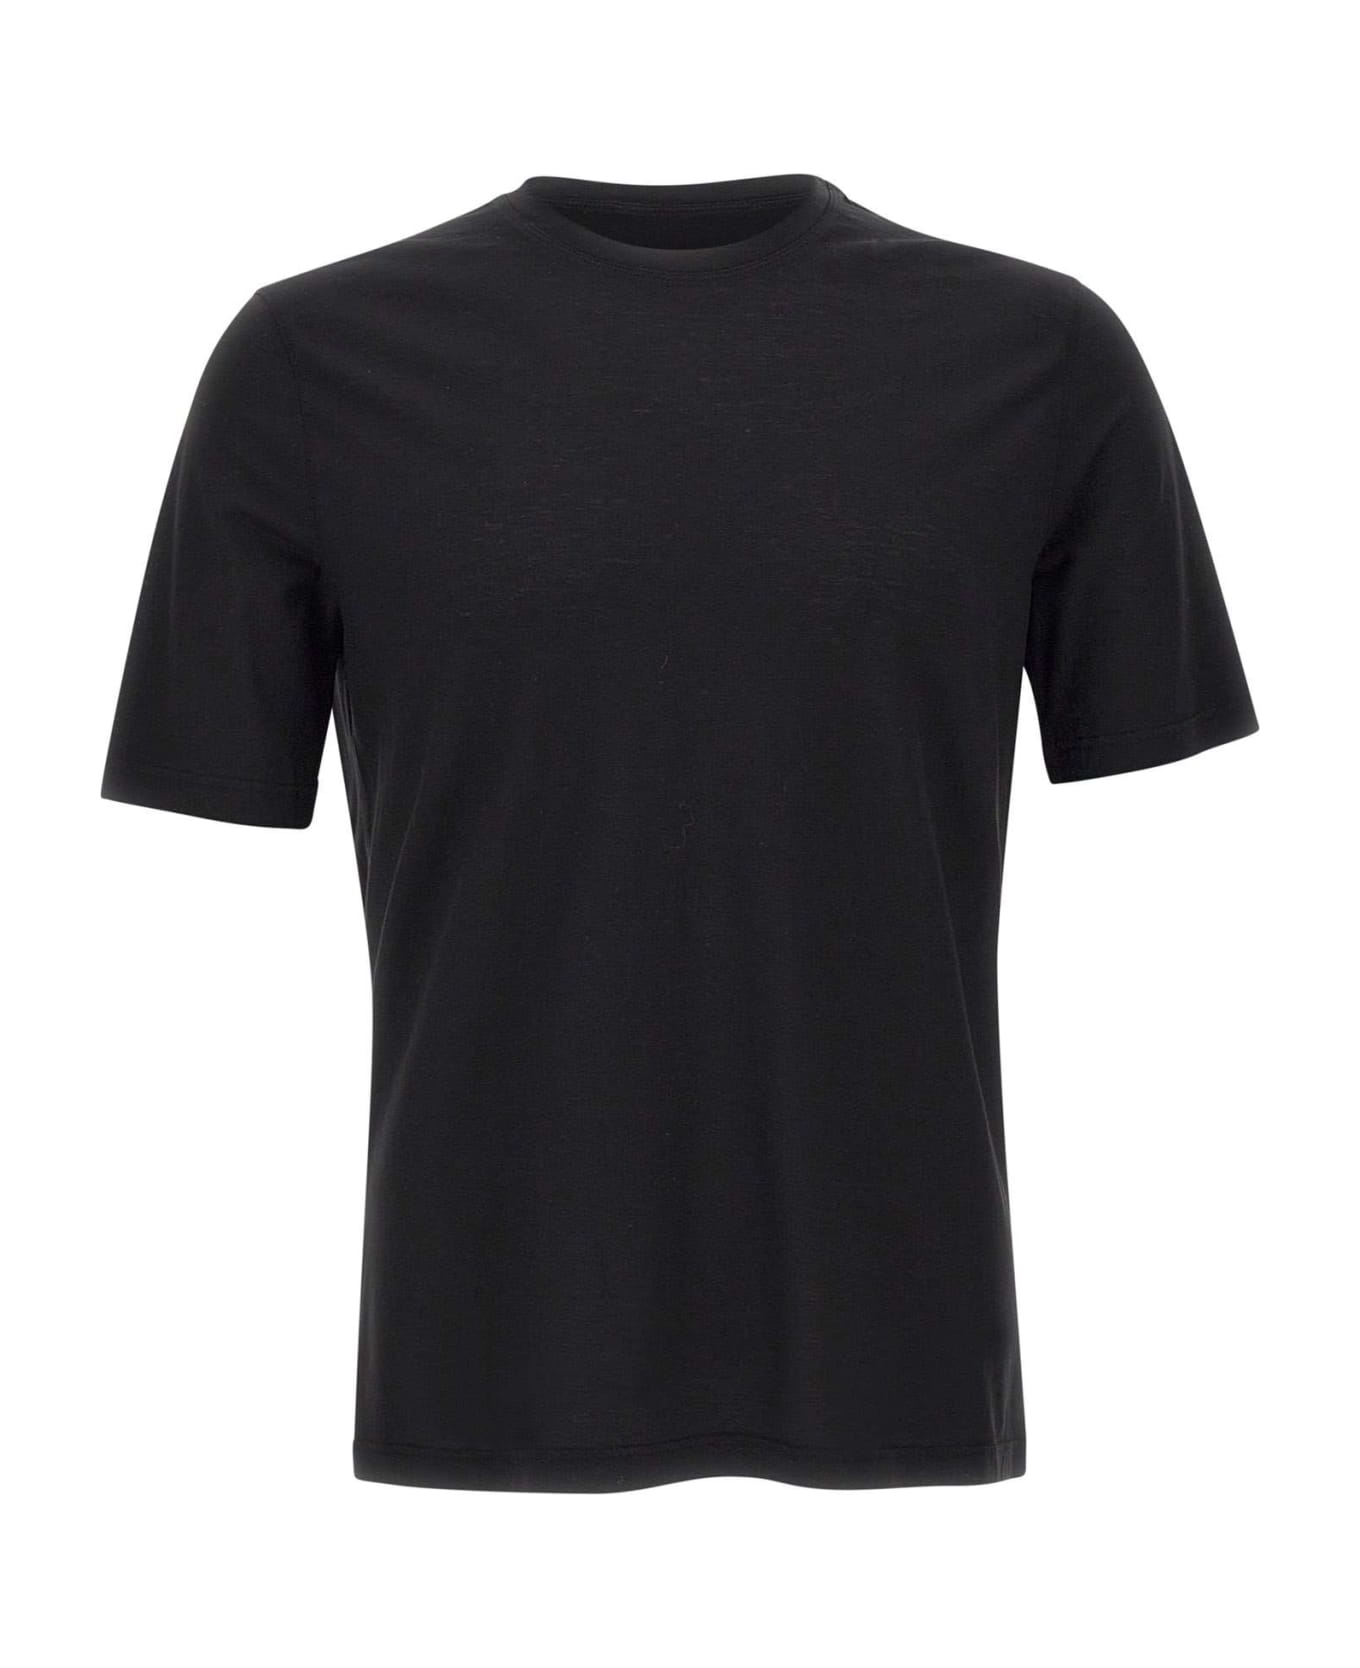 Filippo De Laurentiis Crêpe Cotton T-shirt - Black